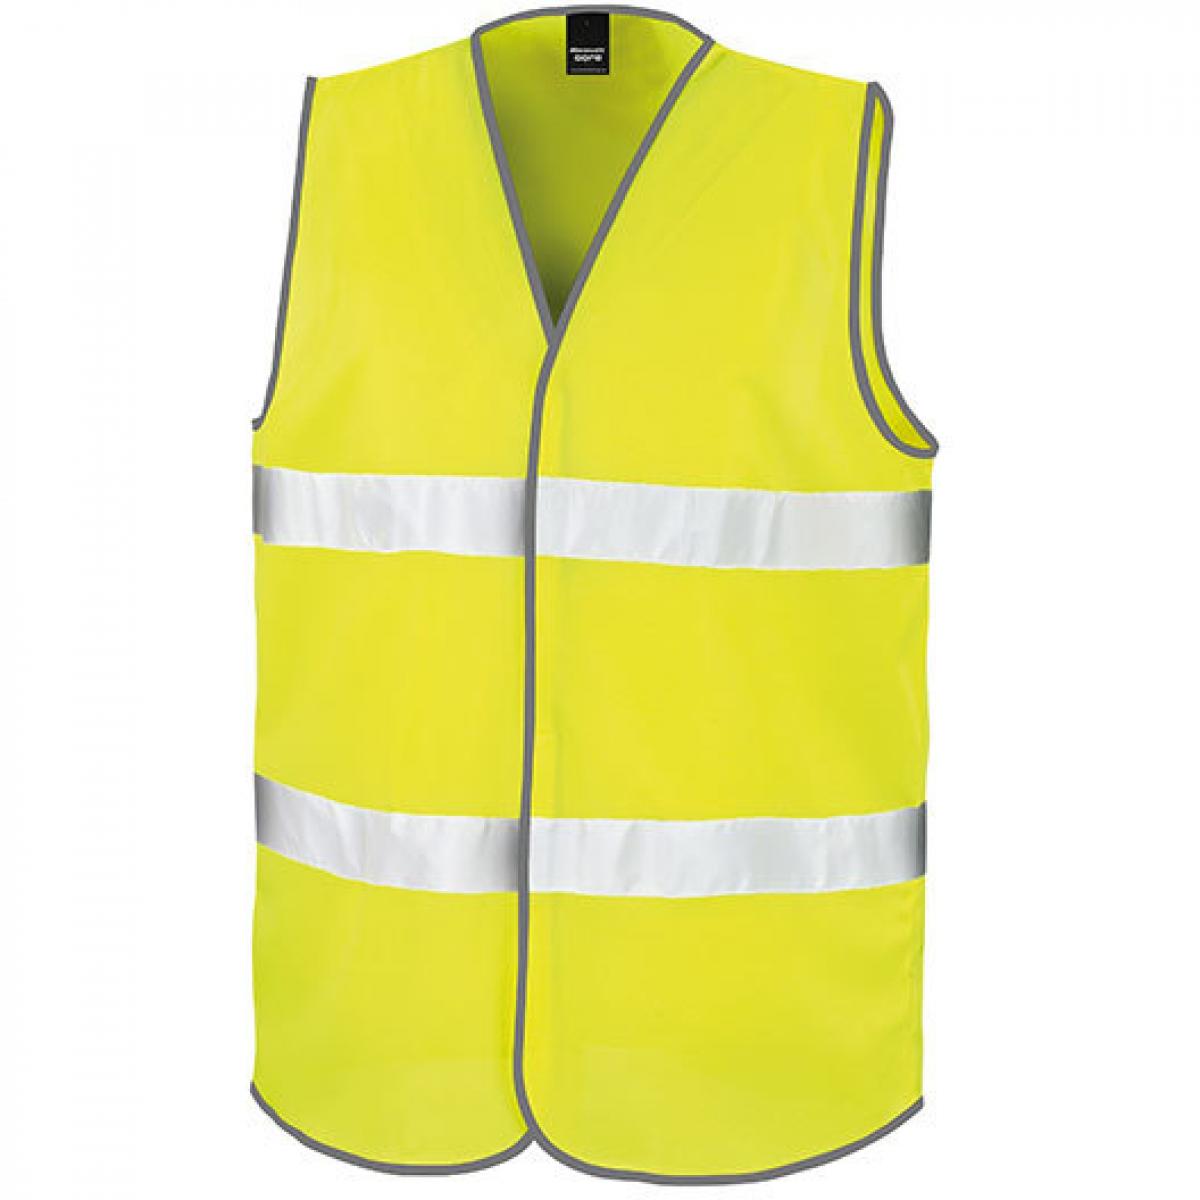 Hersteller: Result Core Herstellernummer: R200X Artikelbezeichnung: Motorist Safety Vest / ISOEN20471:2013, Klasse 2 Farbe: Fluorescent Yellow